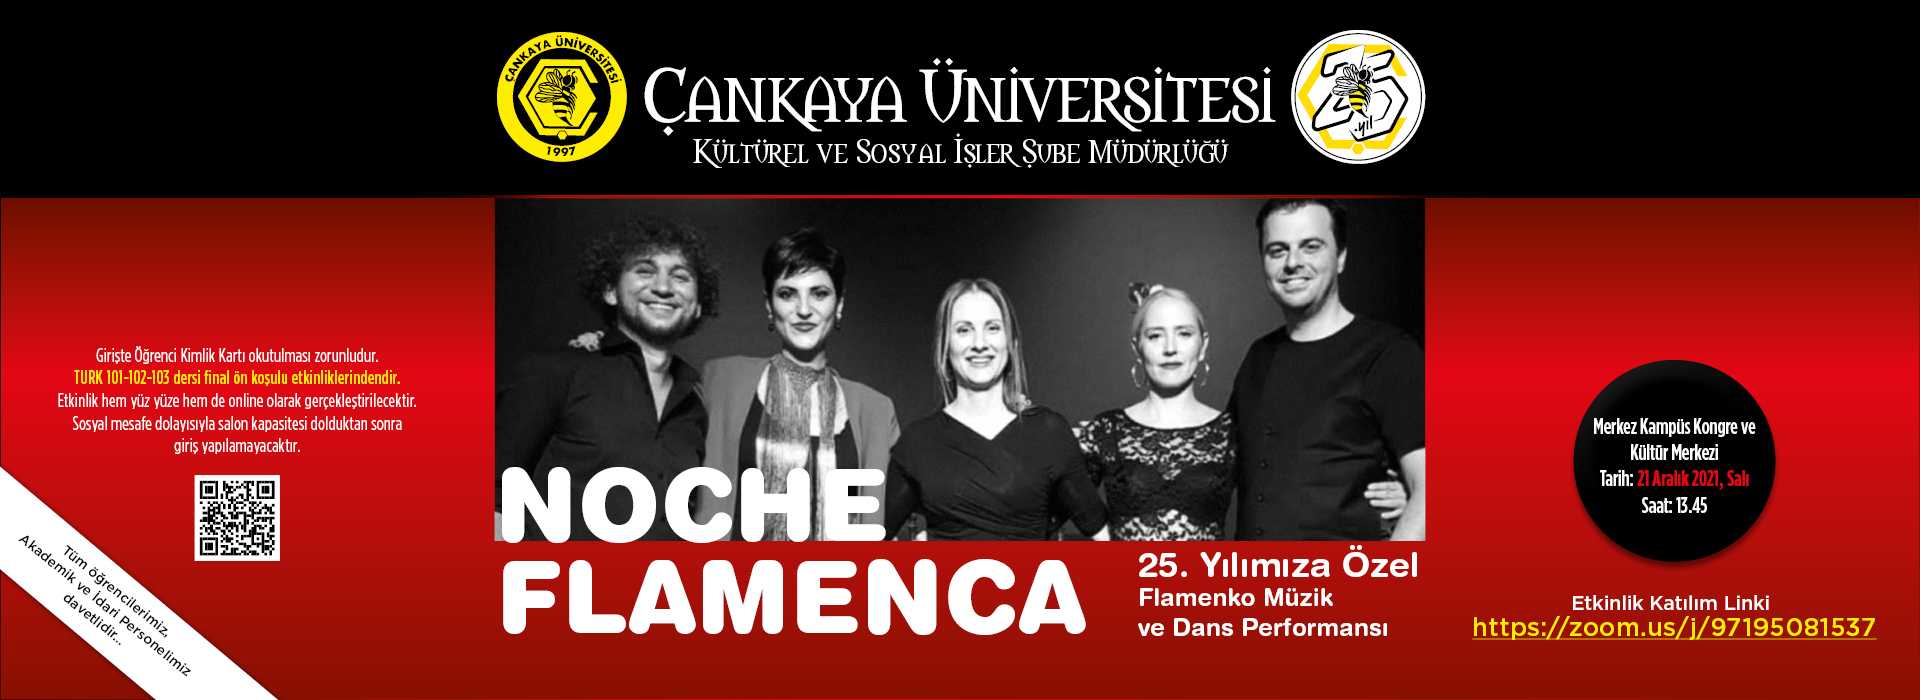 Noche Flamenca- 25. Yılımıza Özel Flamenko Müzik ve Dans Performansı